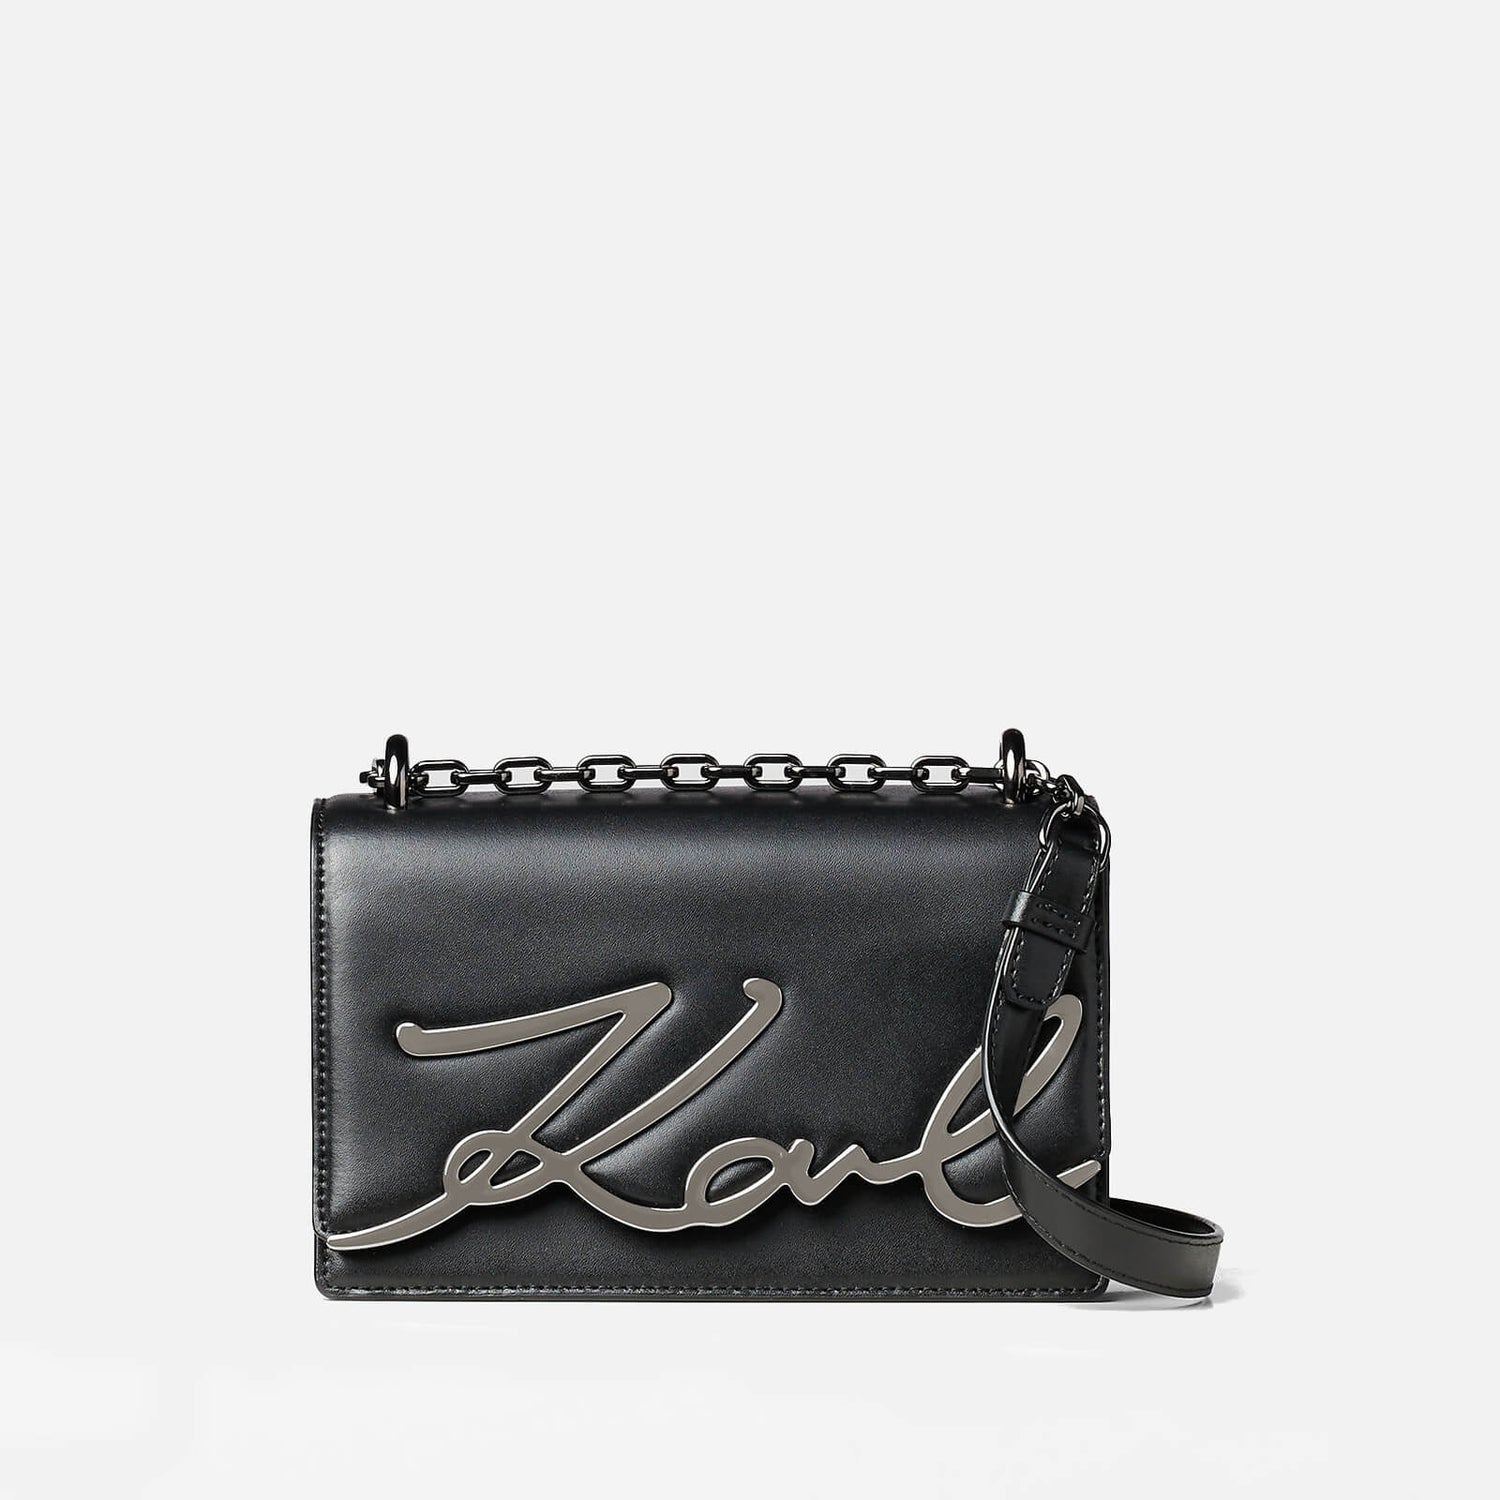 KARL LAGERFELD Women's K/Signature Small Shoulder Bag - Black/Gun metal